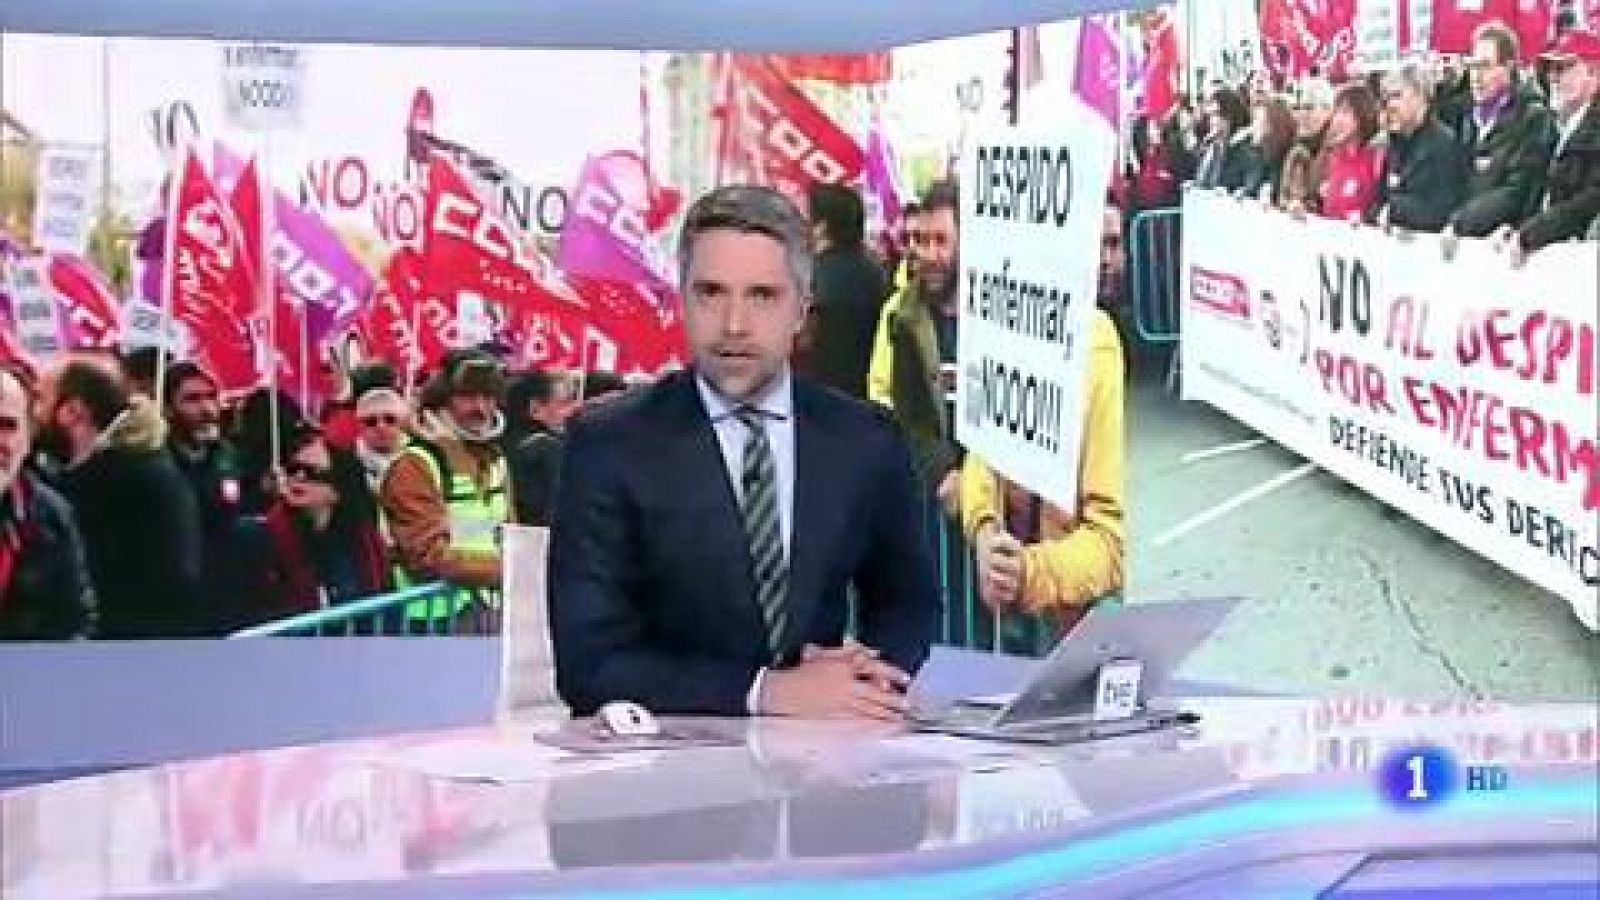 Los sindicatos se manifiestan en toda España en contra del "despido por enfermar" - RTVE.es